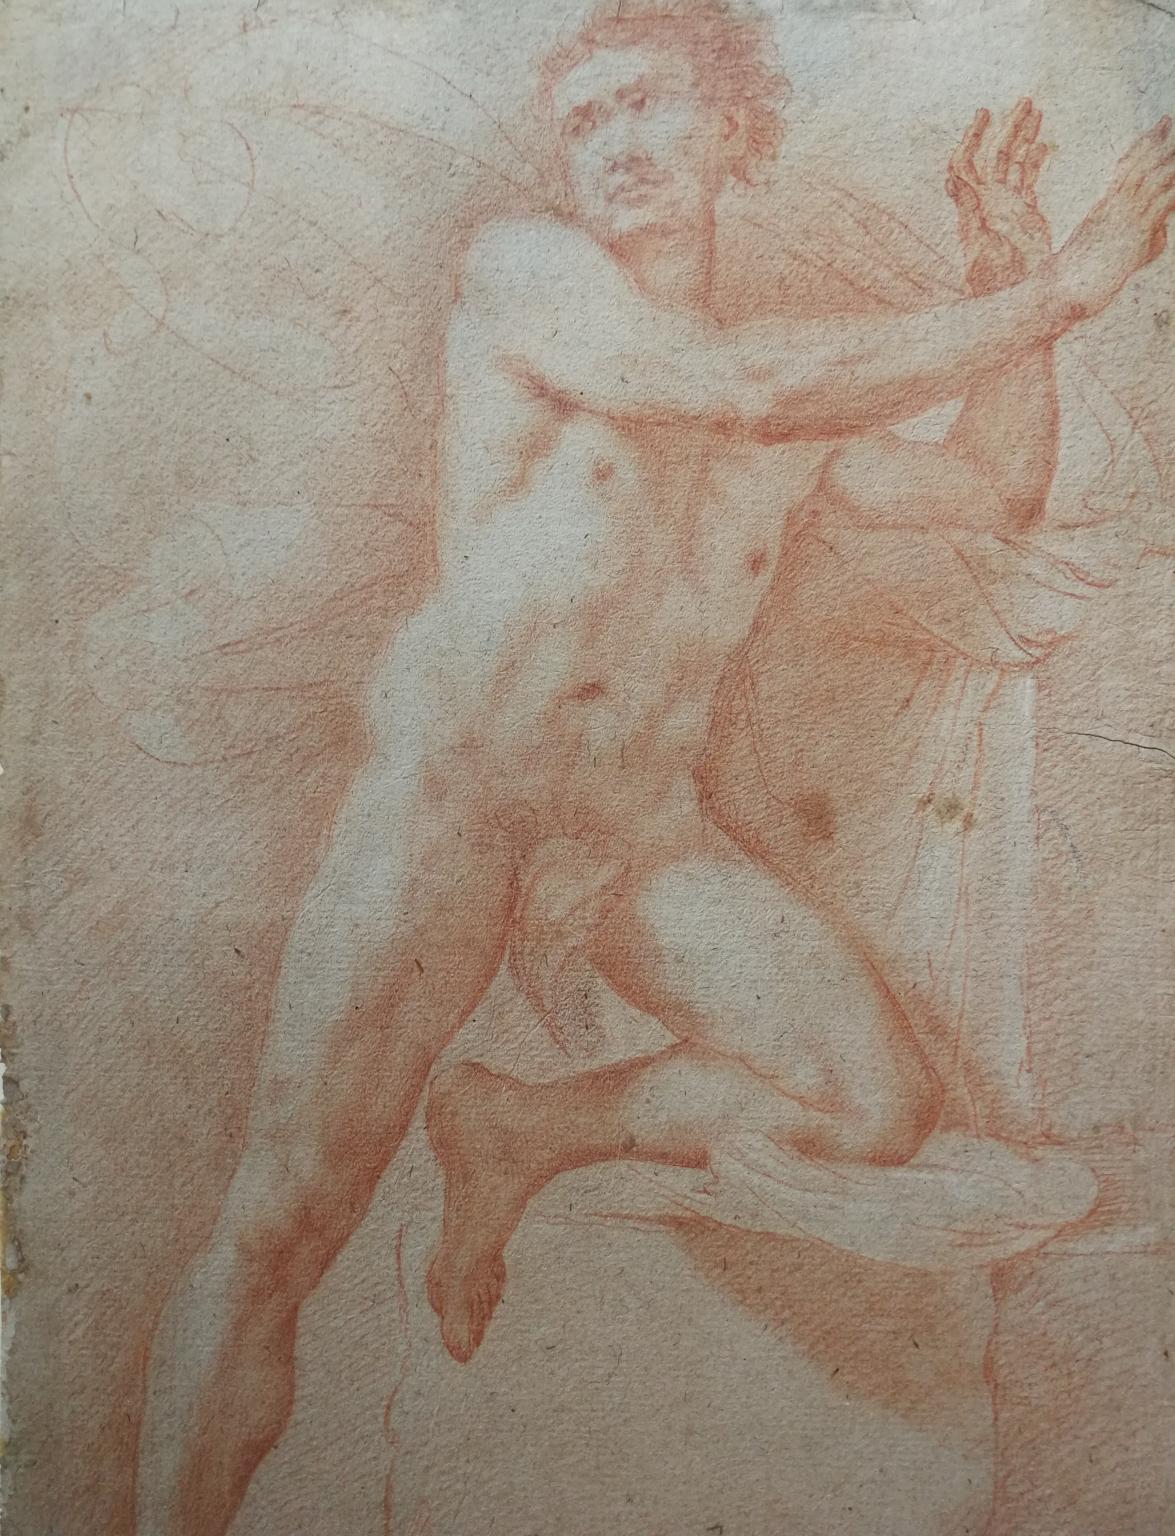 Francesco Furini Sanguine-Zeichnung vor 1642 